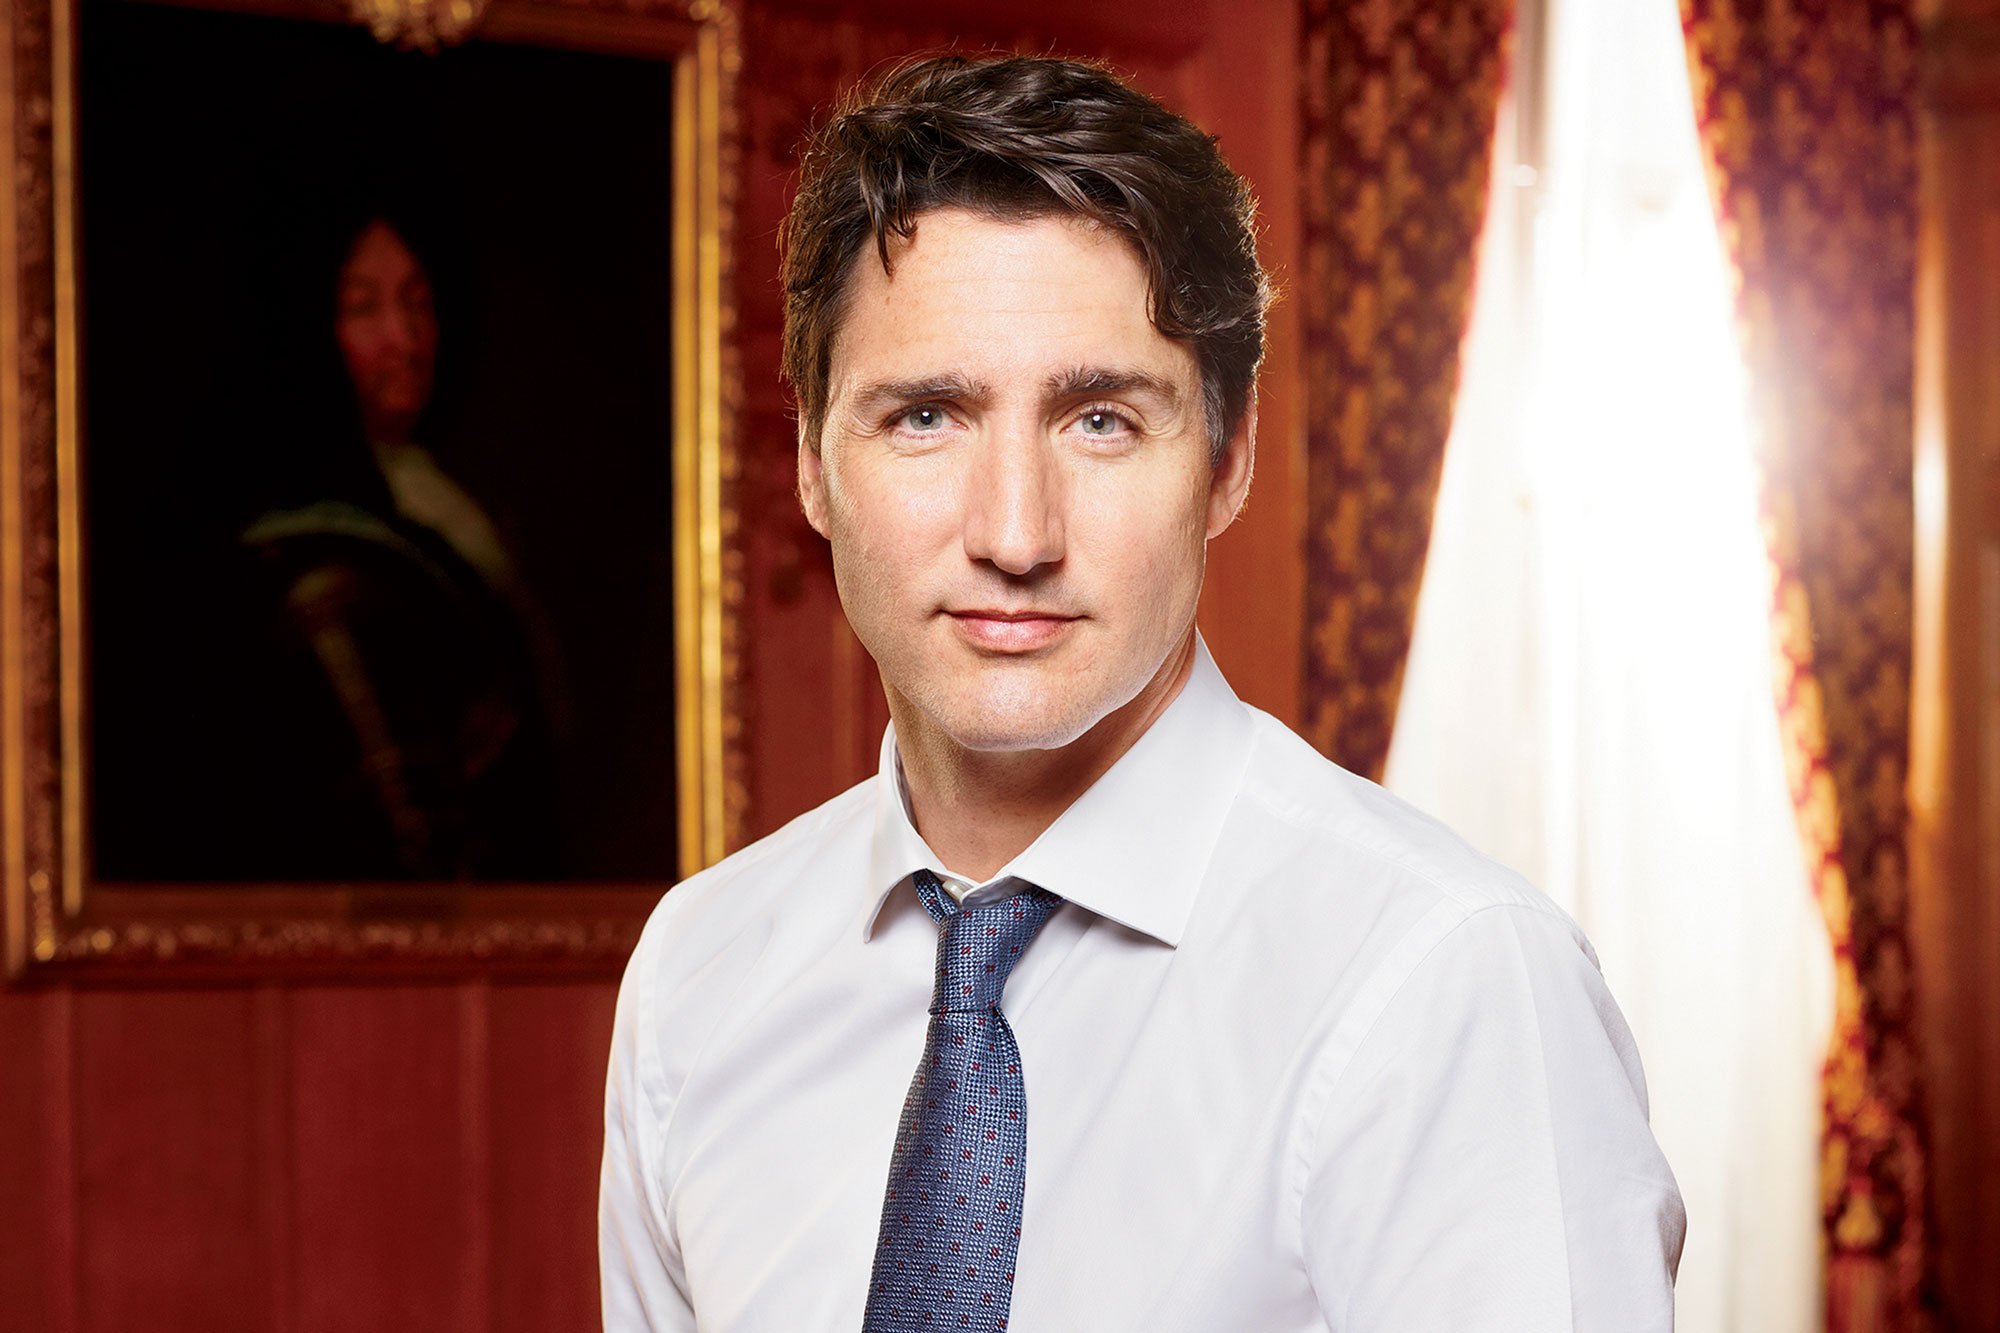 Speranța nu moare niciodată: Pentru ce luptă, de fapt, premierul Canadei?